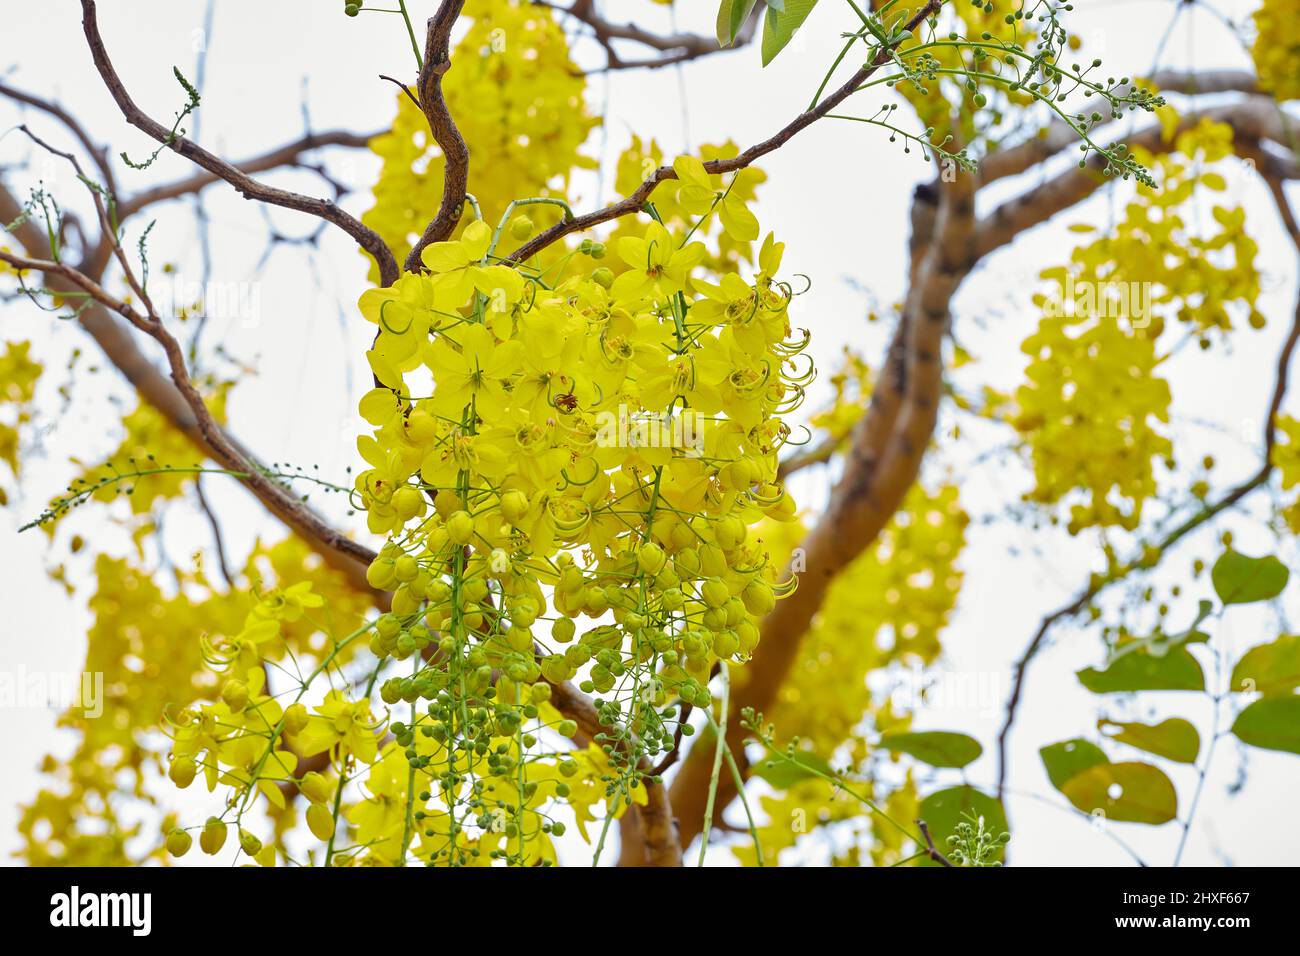 Golden doccia albero fiore fiore fiore su ramo albero Foto Stock